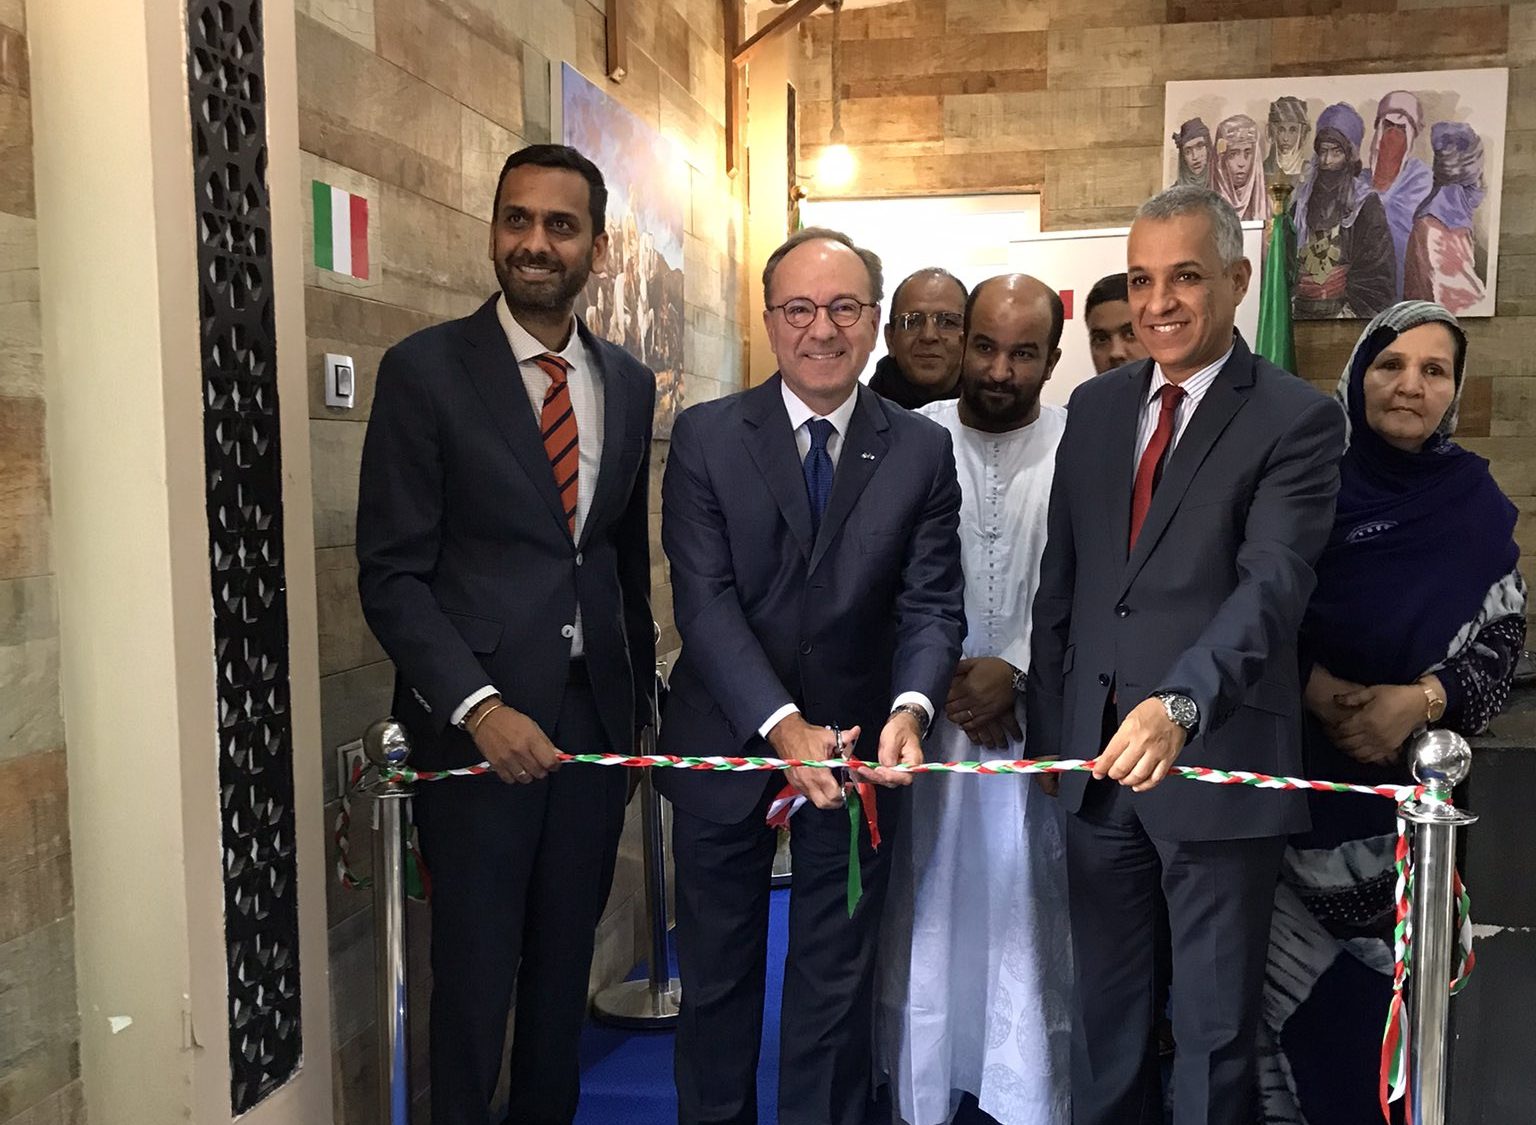 L’ambassade d’Italie au Maroc tente de banaliser l’ouverture d’un centre de services consulaires à Tindouf